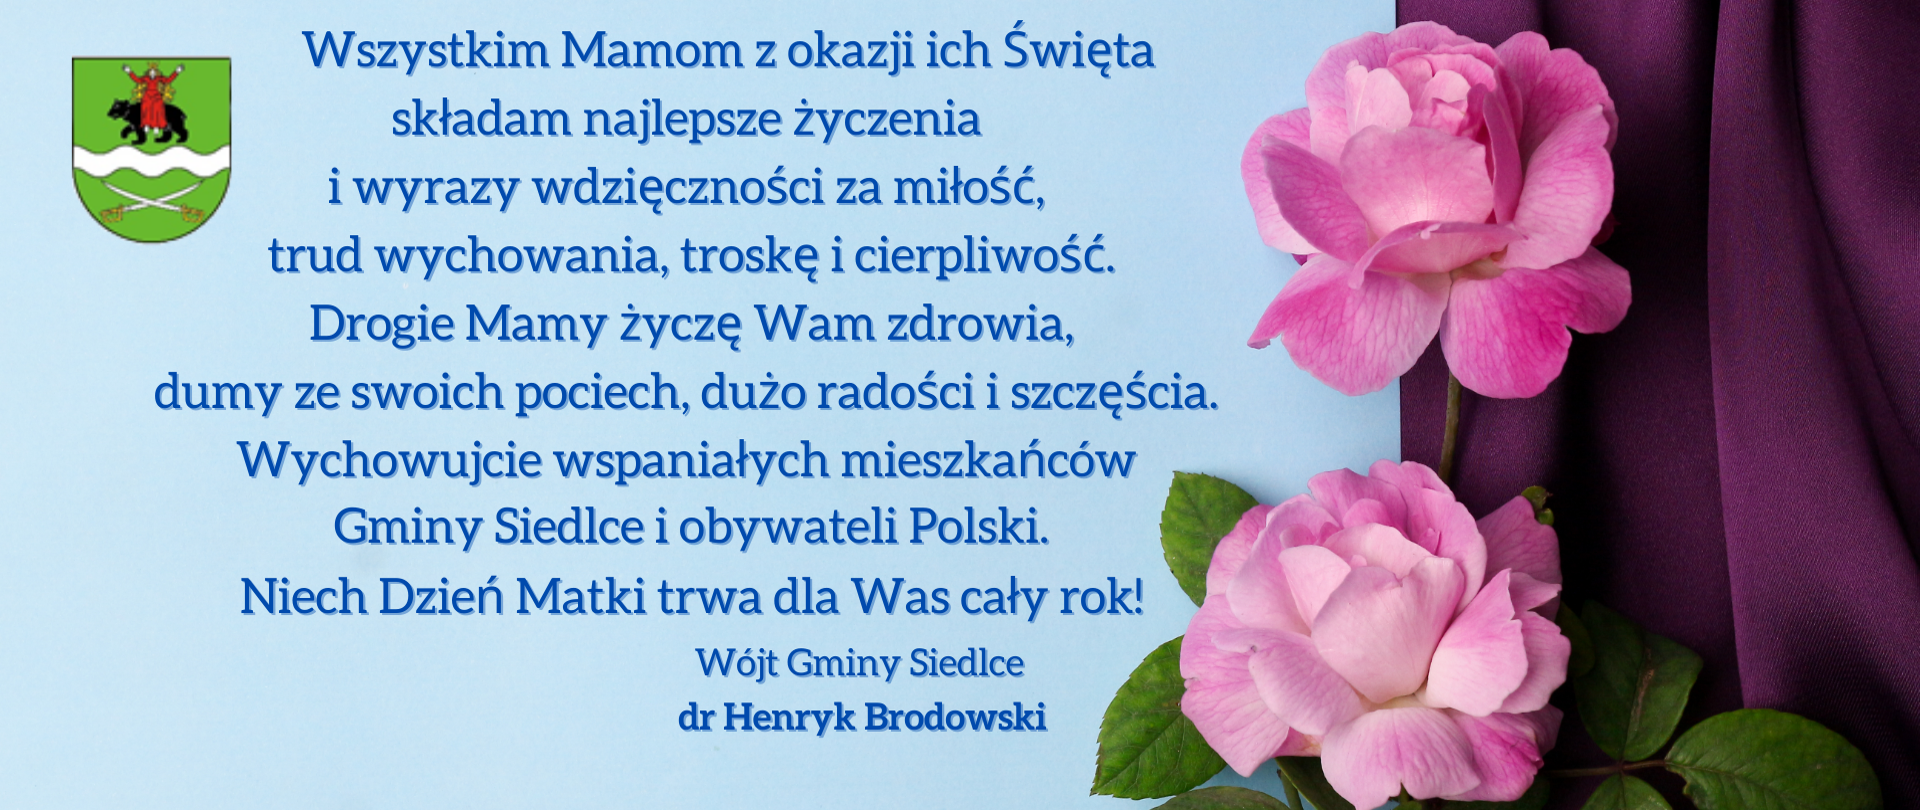 Kartka z życzeniami z okazji Dnia Matki, życzenia na niebieskim tle po prawej stronie różowe róże